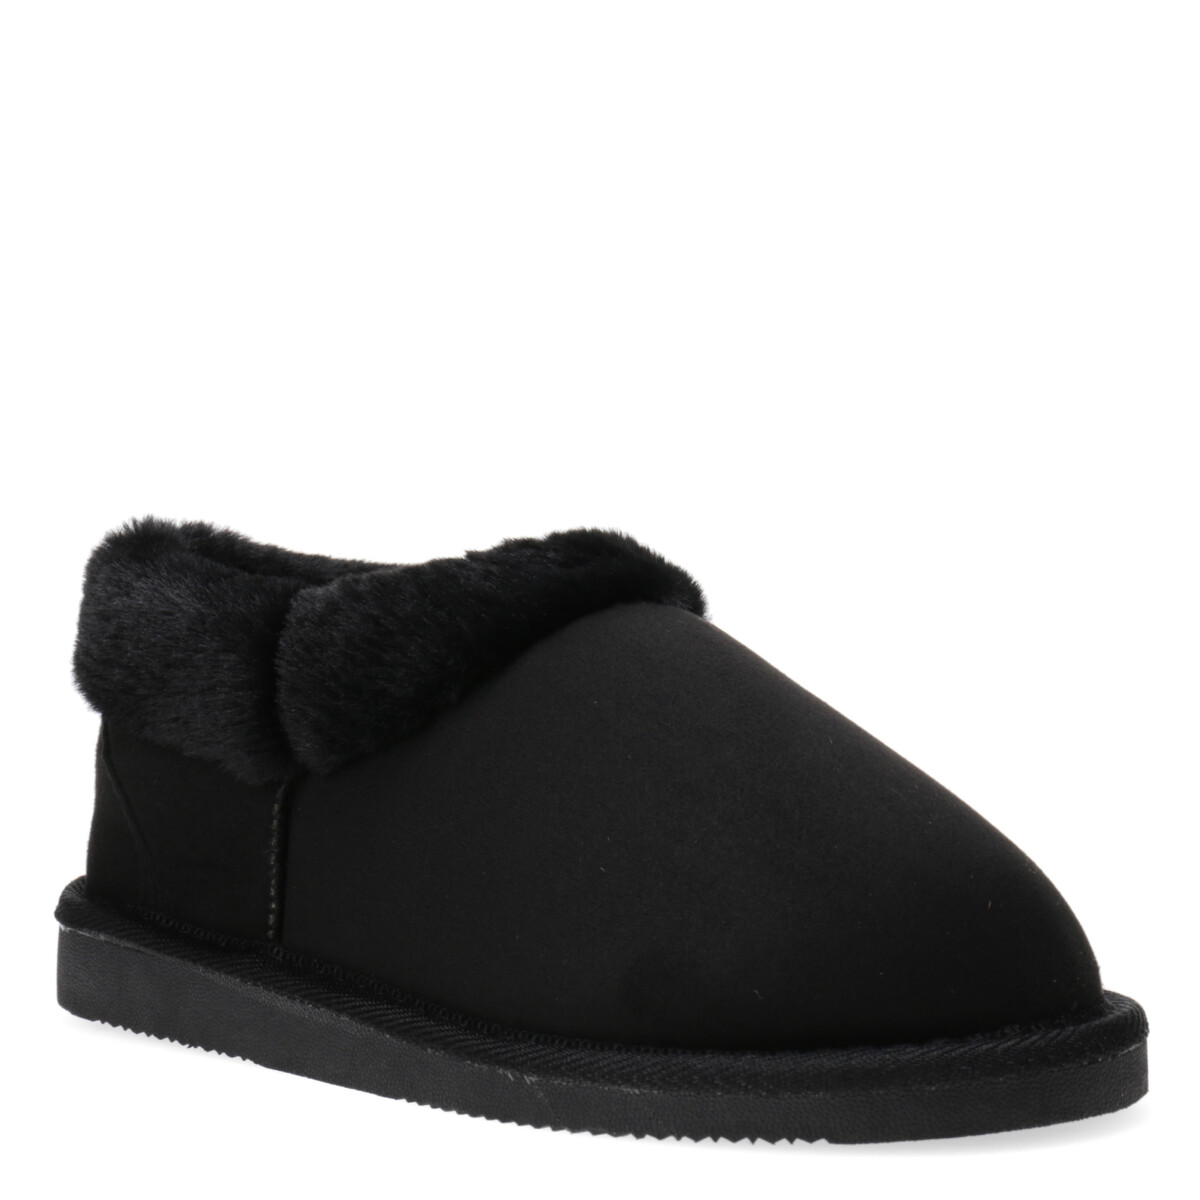 Zapato COSY tipo pantufla Lady Confort - Black 